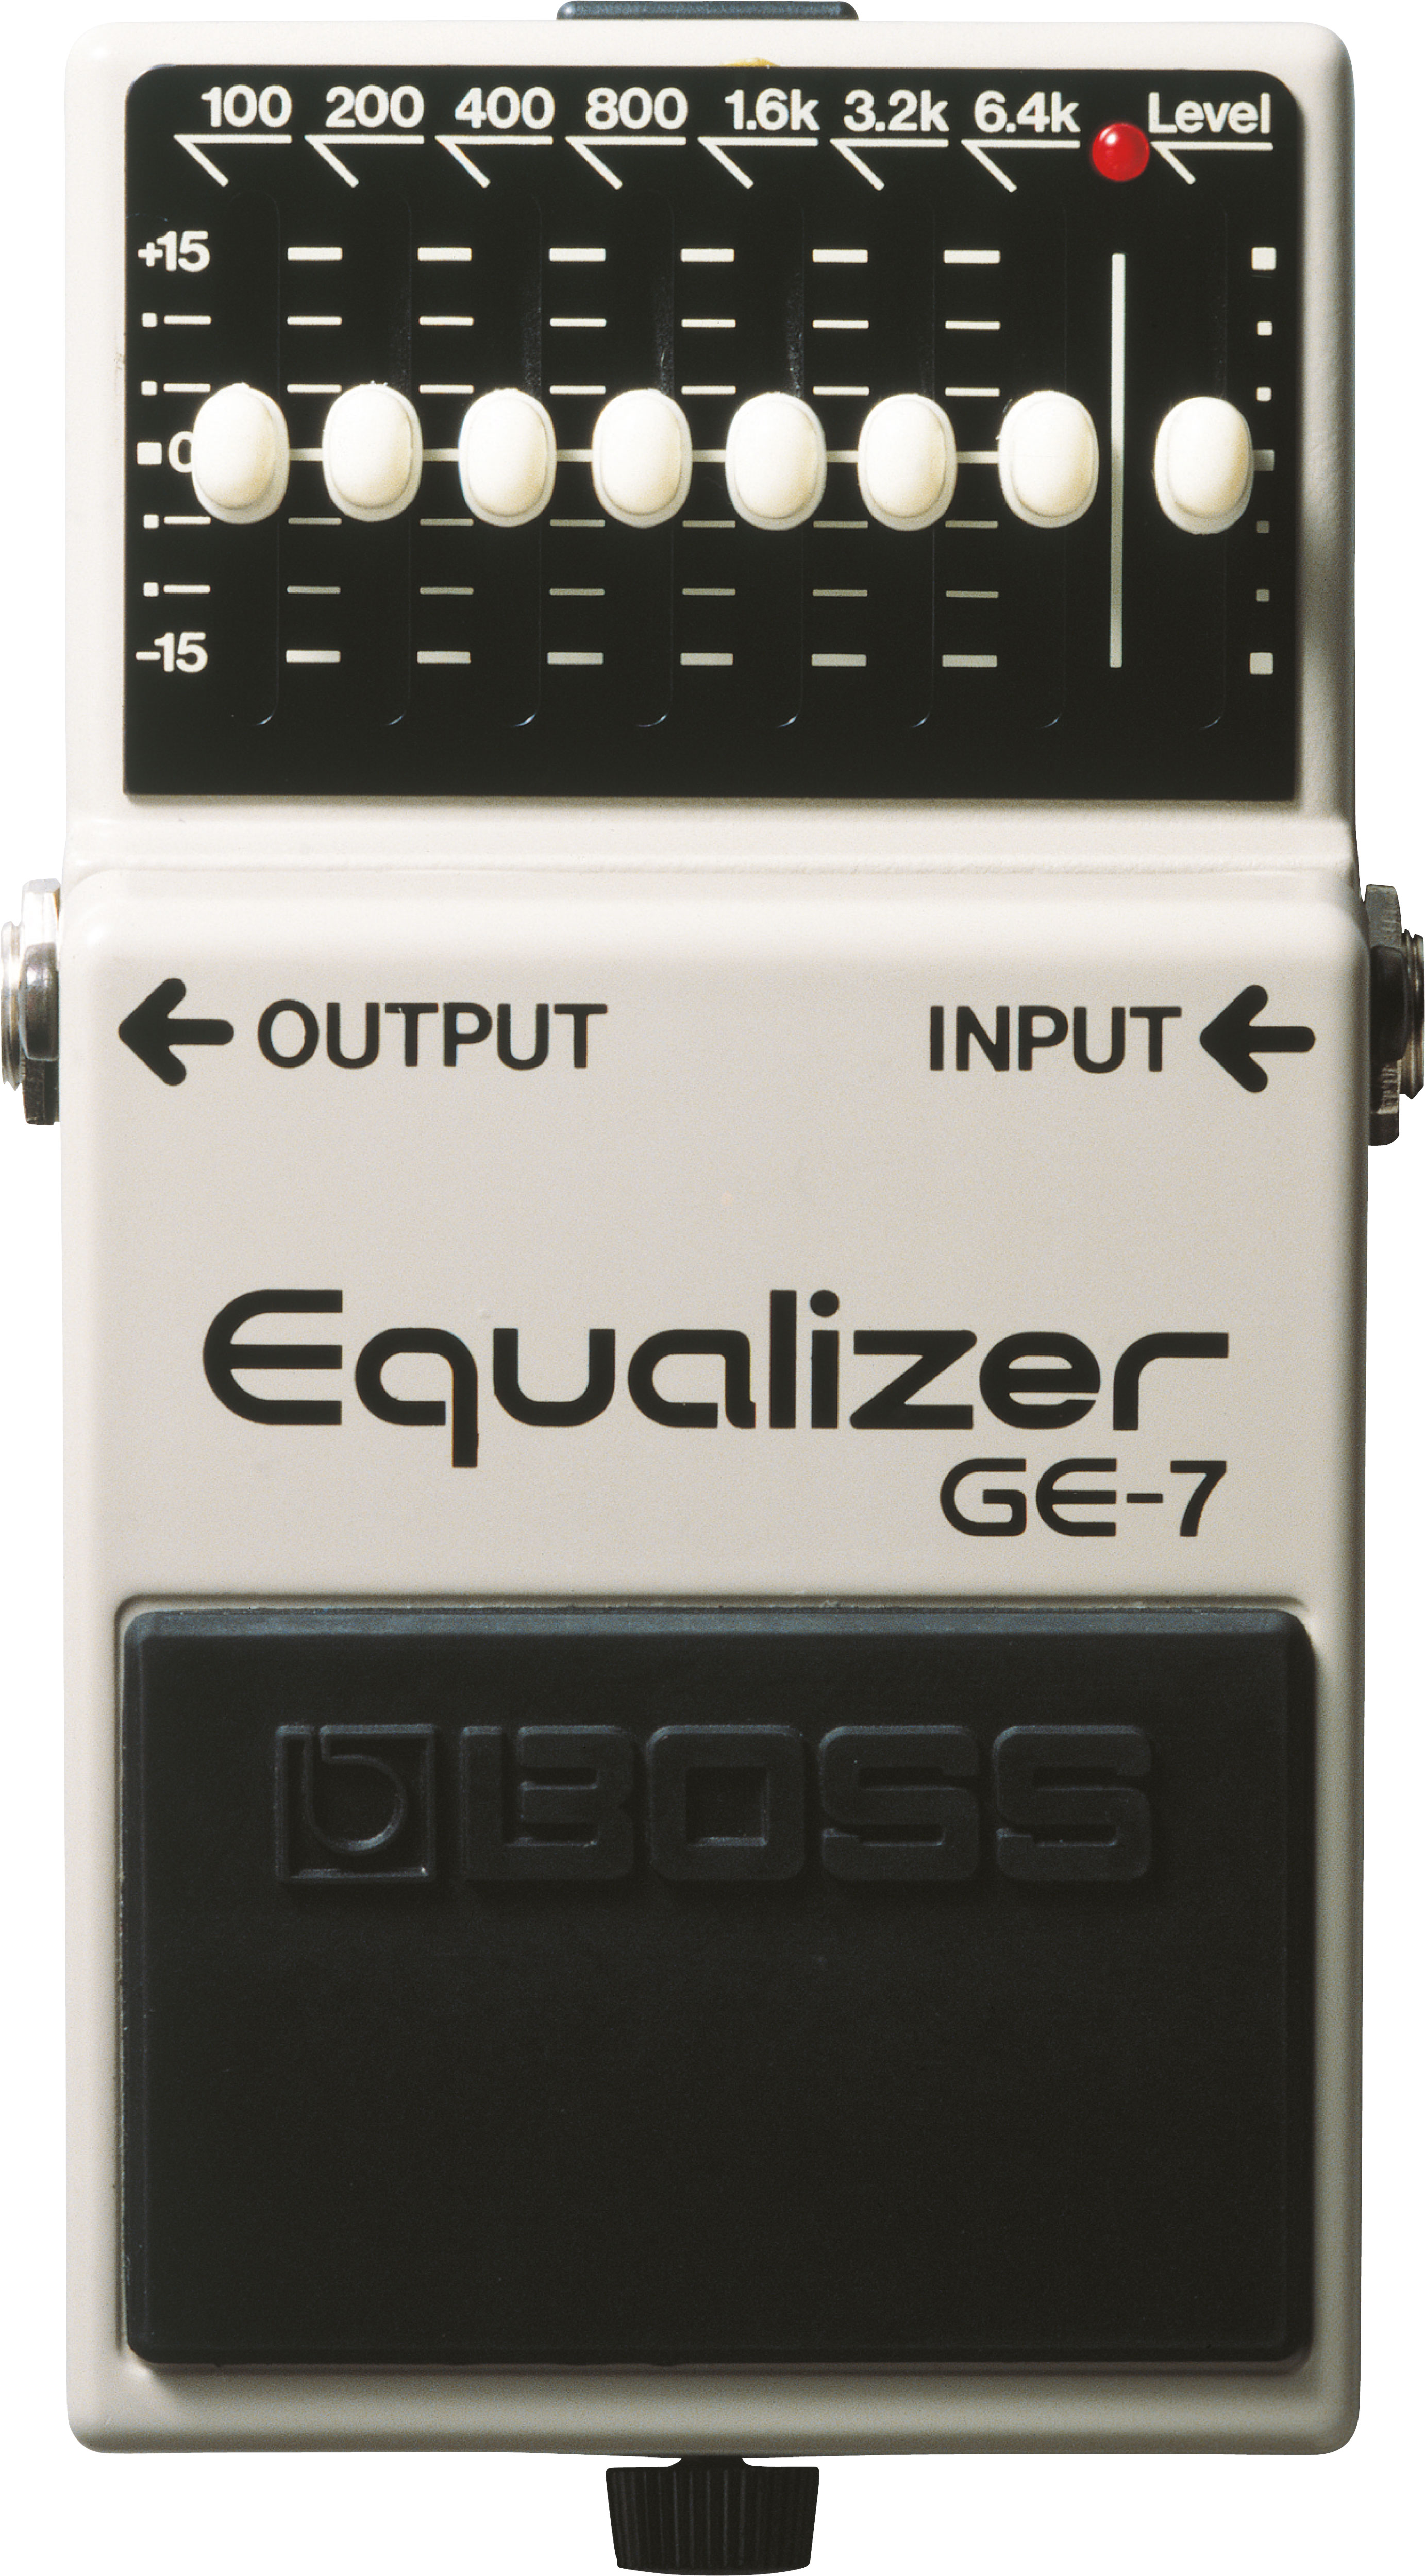 GE-7 Equalizer